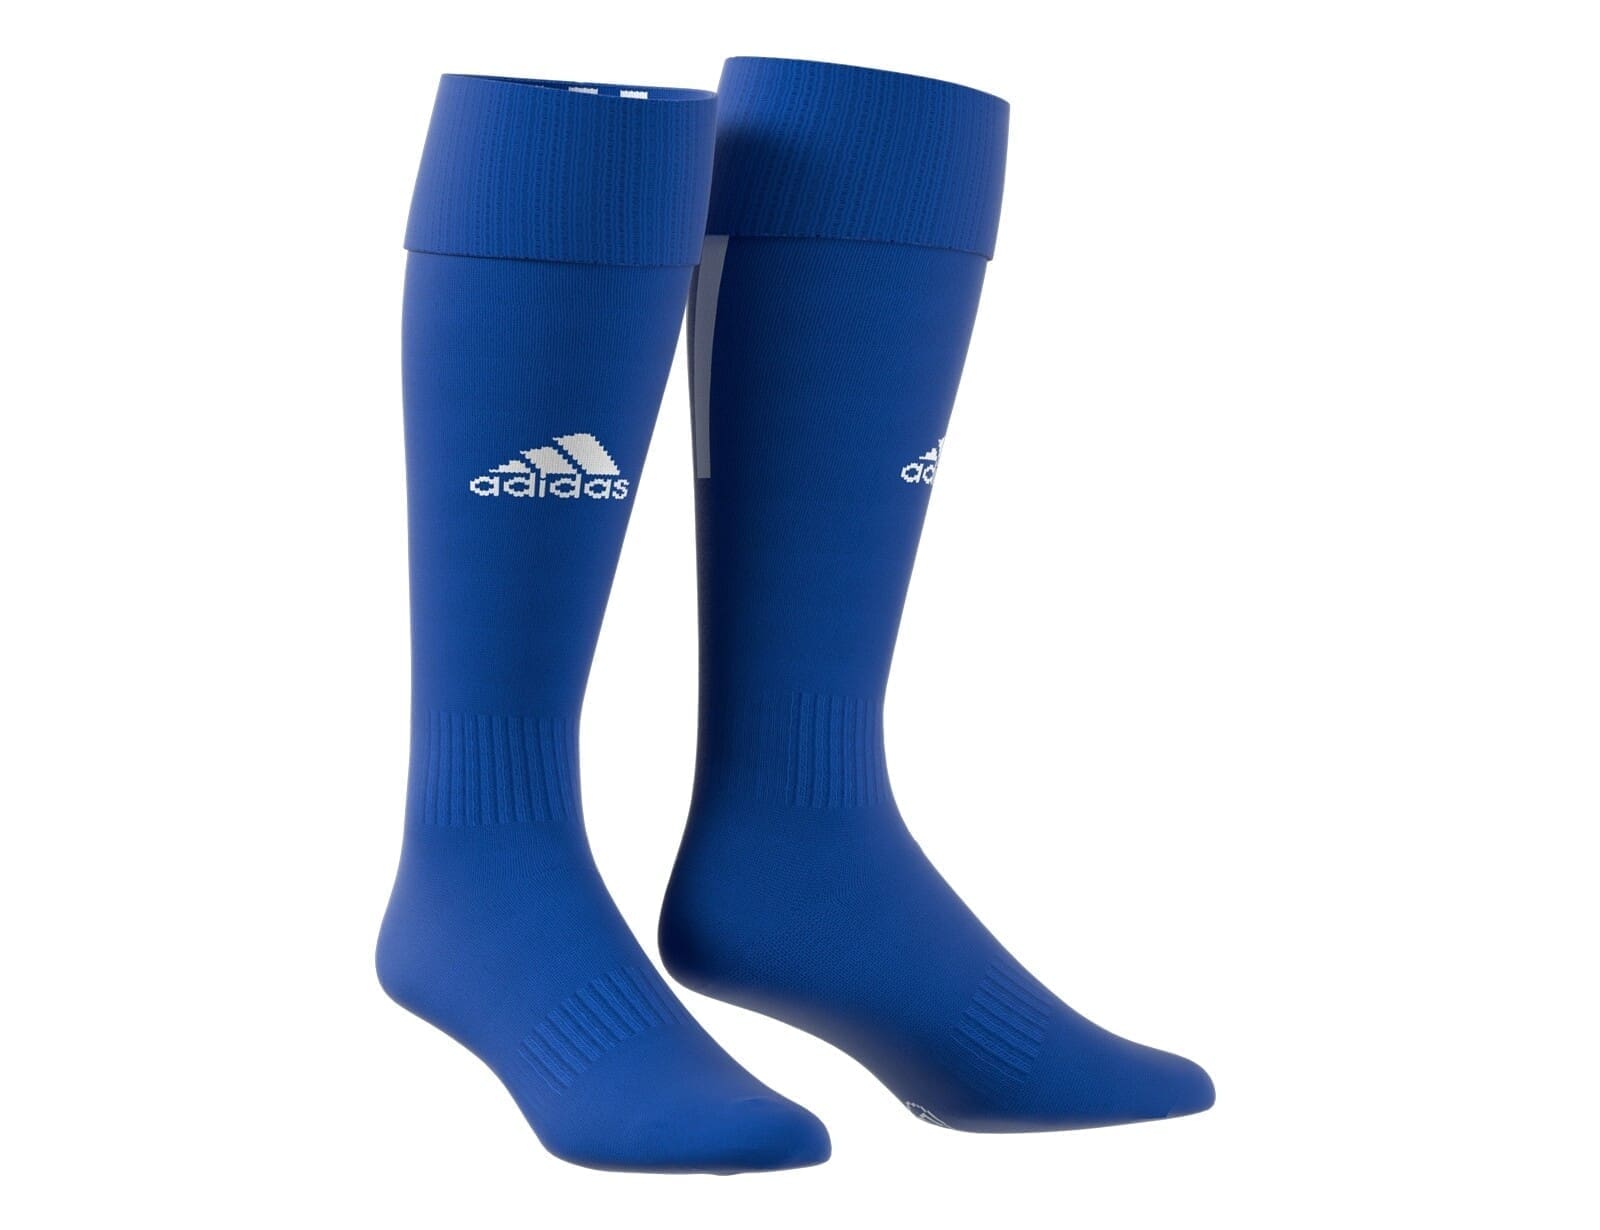 adidas - Santos 18 Socks - Blauwe Voetbalsokken